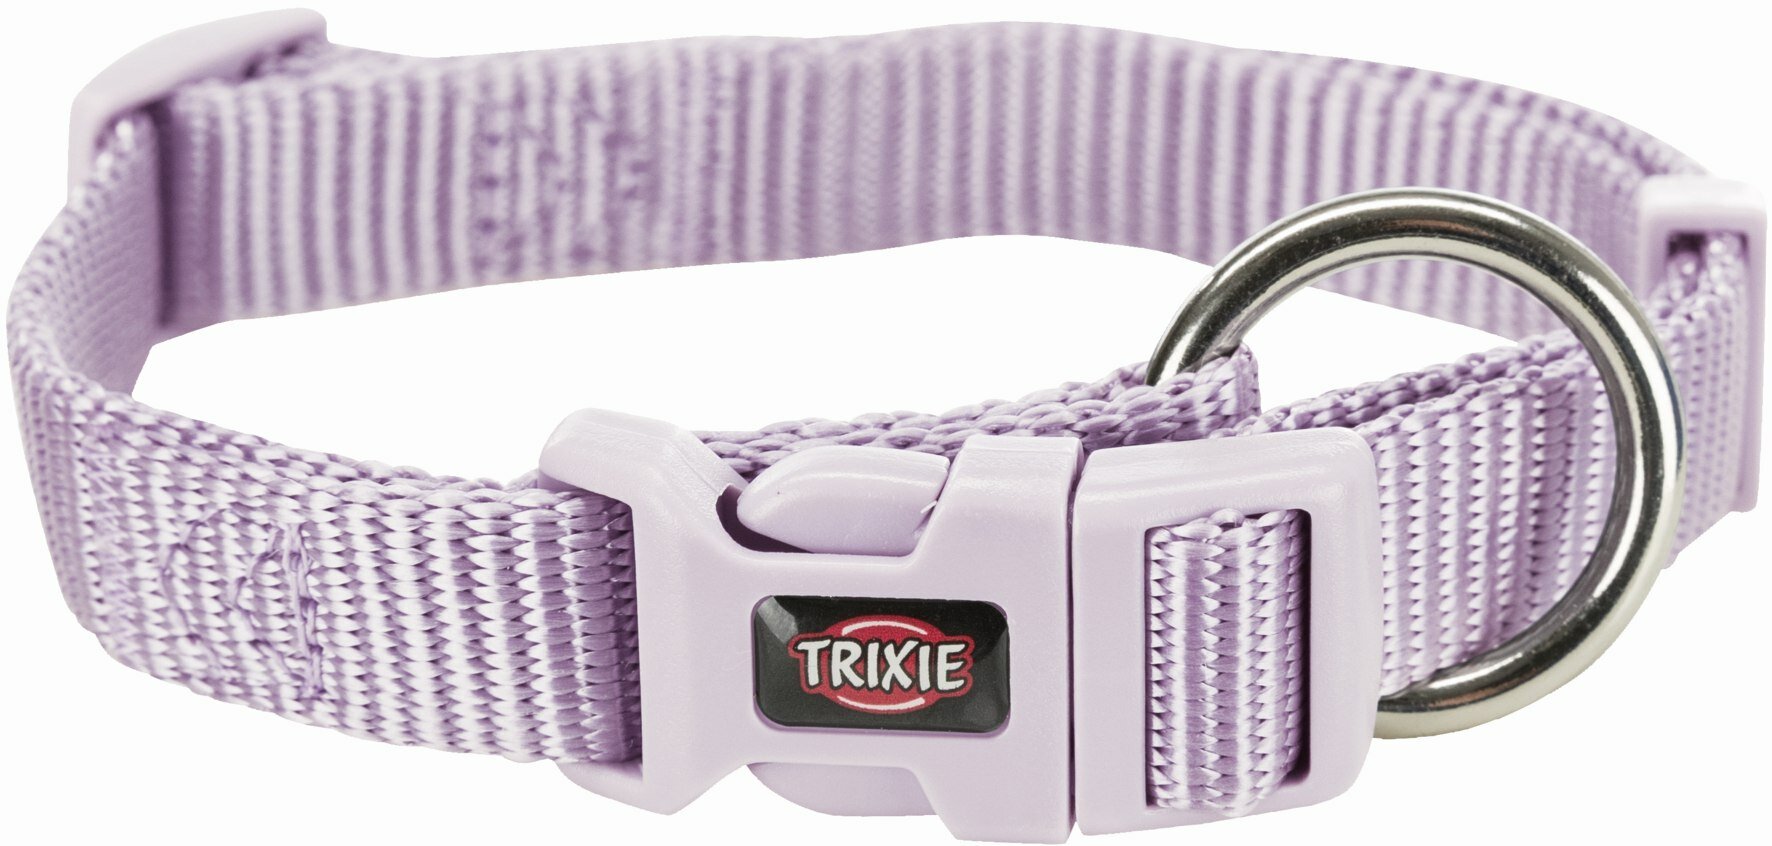 Для ежедневного использования ошейник TRIXIE Premium M–L, обхват шеи 35-55 см, 1 шт, светло-сиреневый, L